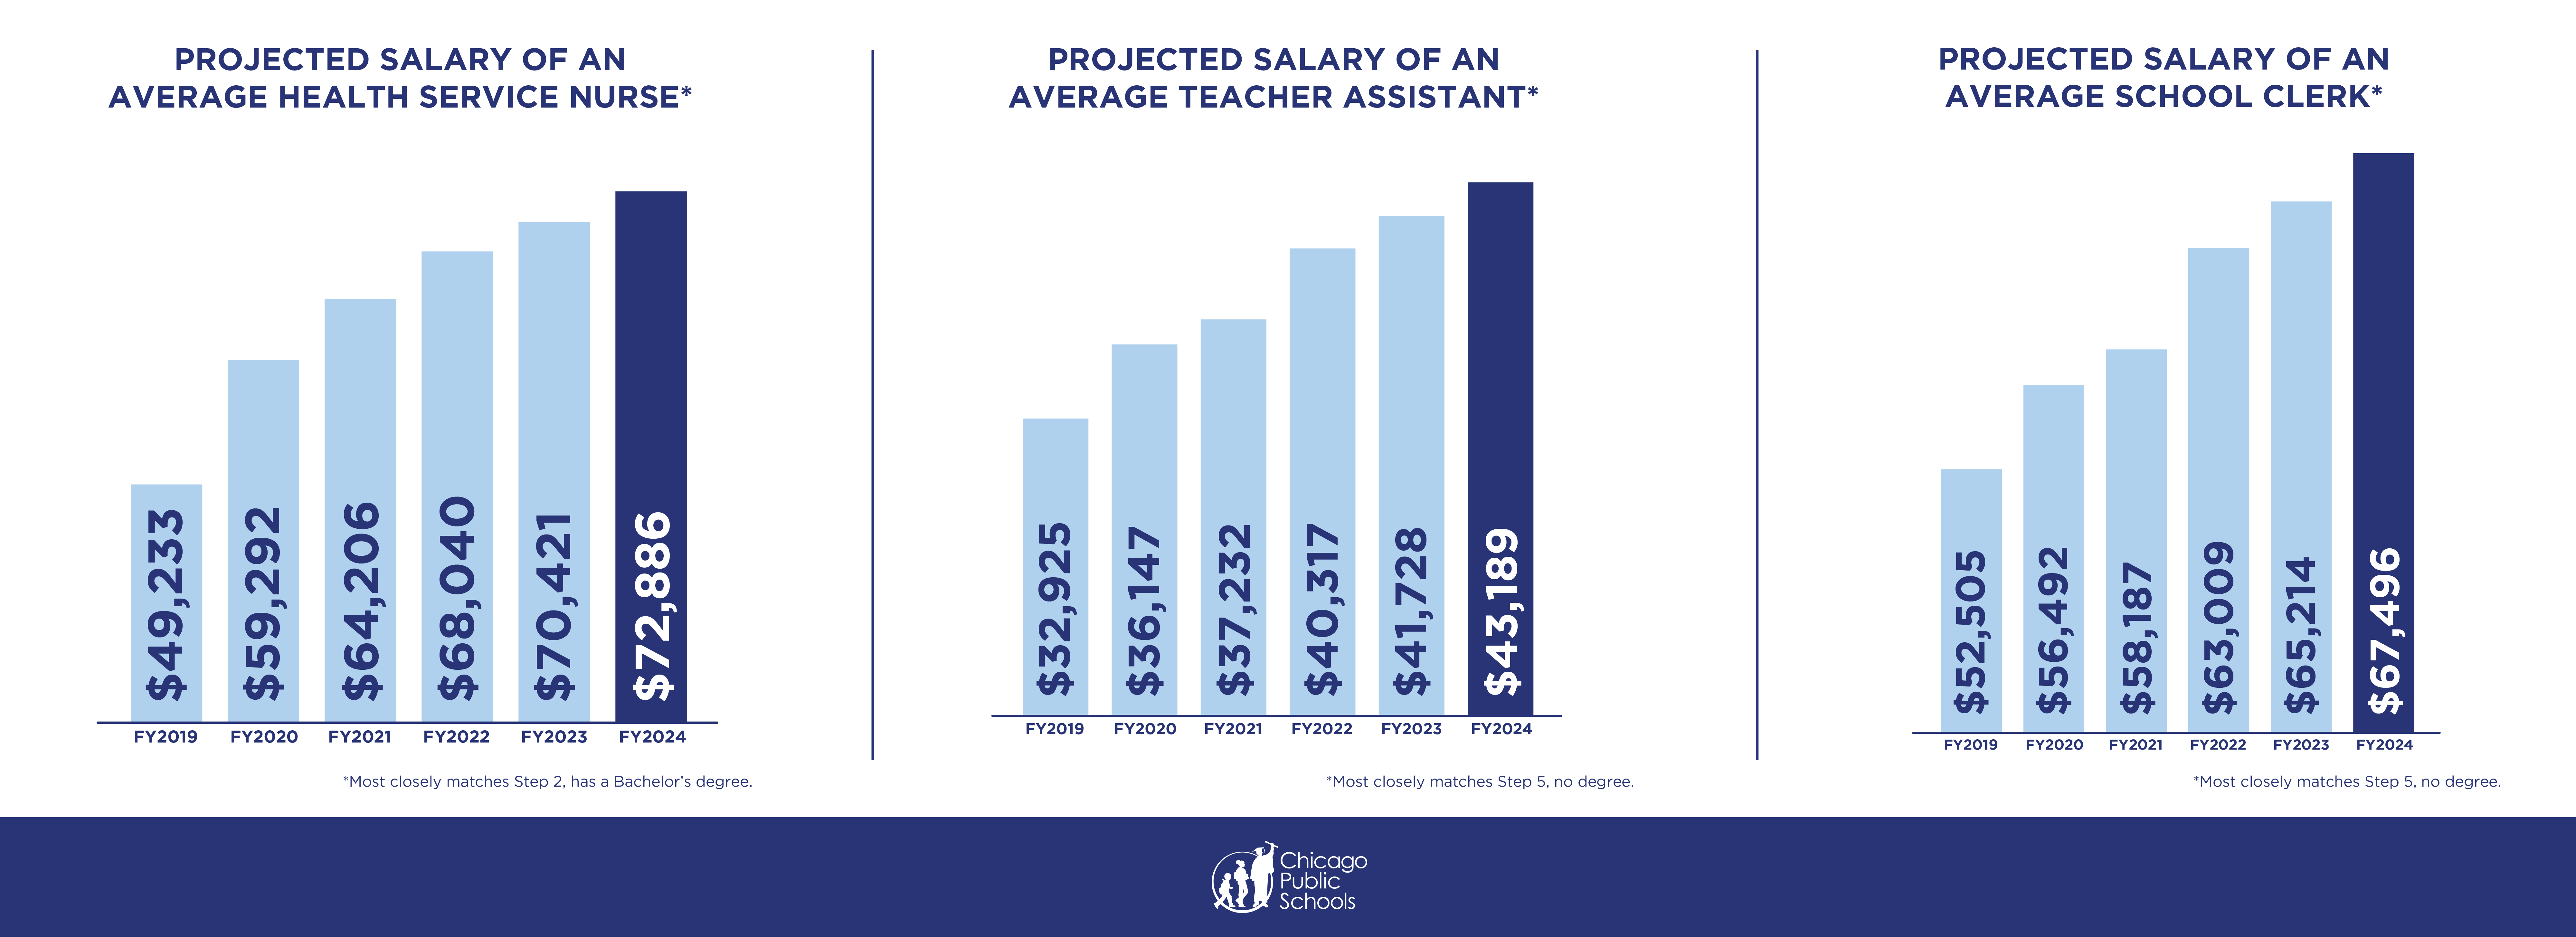 Comparison of projected salaries between school workers